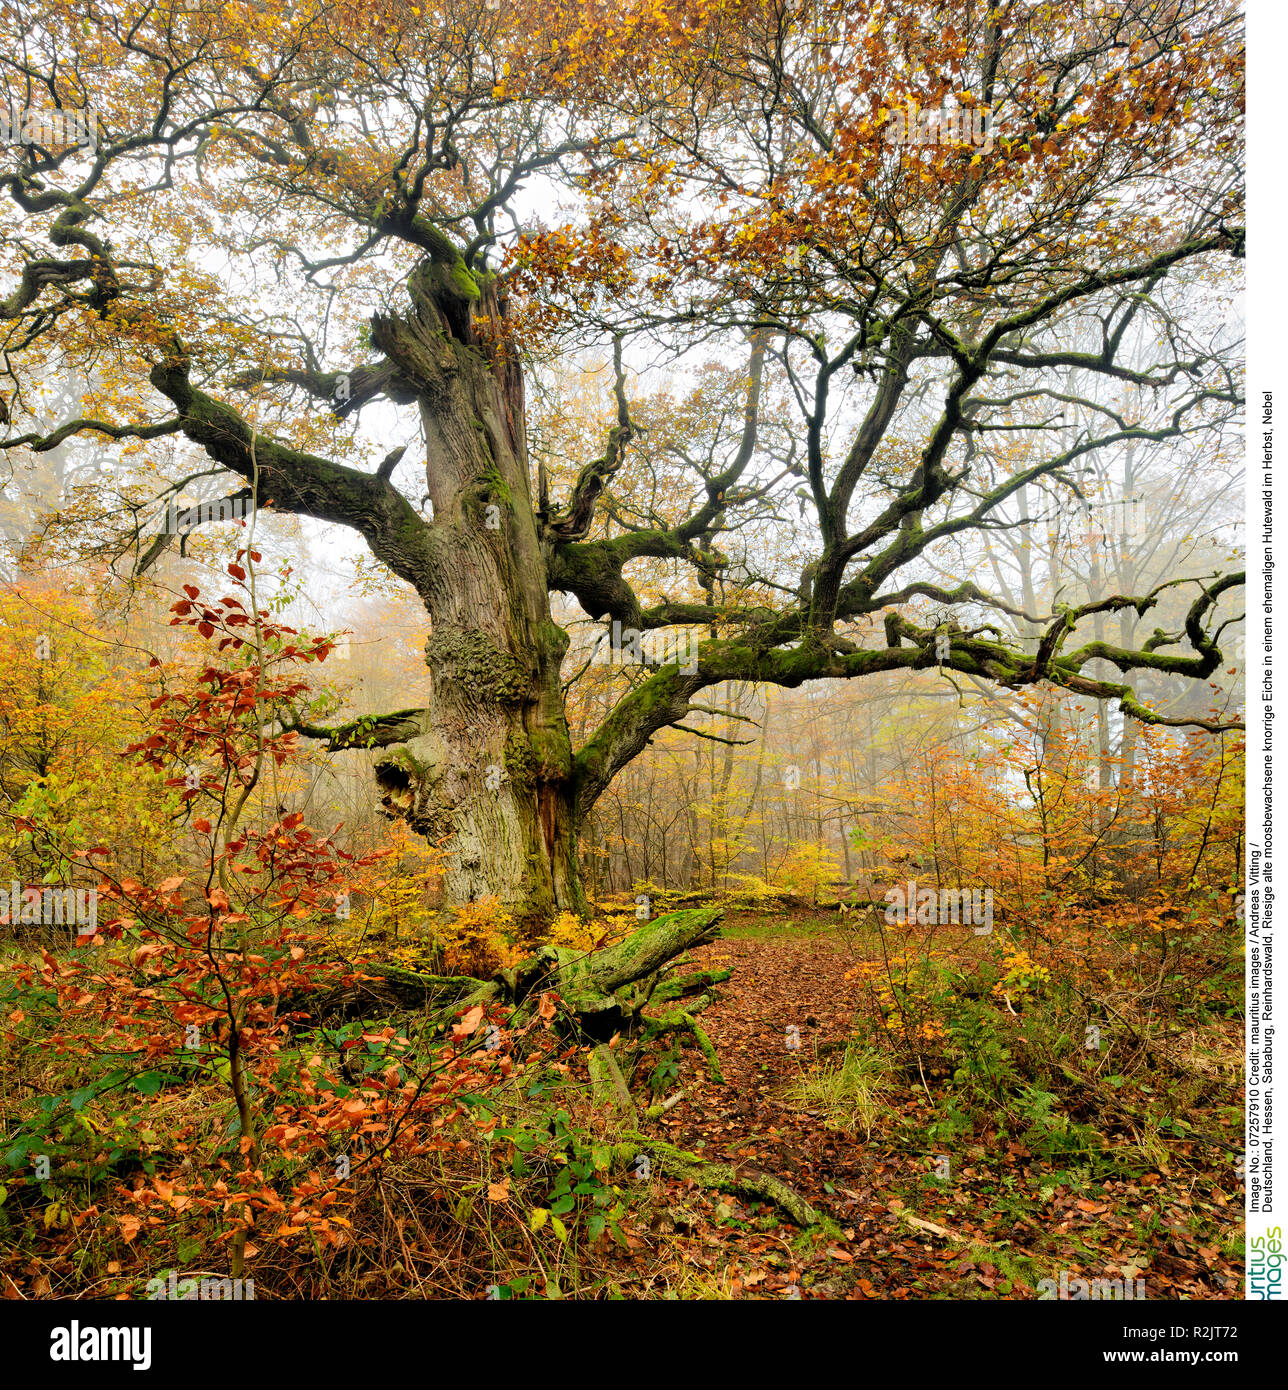 Deutschland, Hessen, Sababurg, Reinhardswald, riesigen alten Moosbewachsenen knorrigen Eiche in einem ehemaligen pastorale Wald im Herbst, Nebel Stockfoto